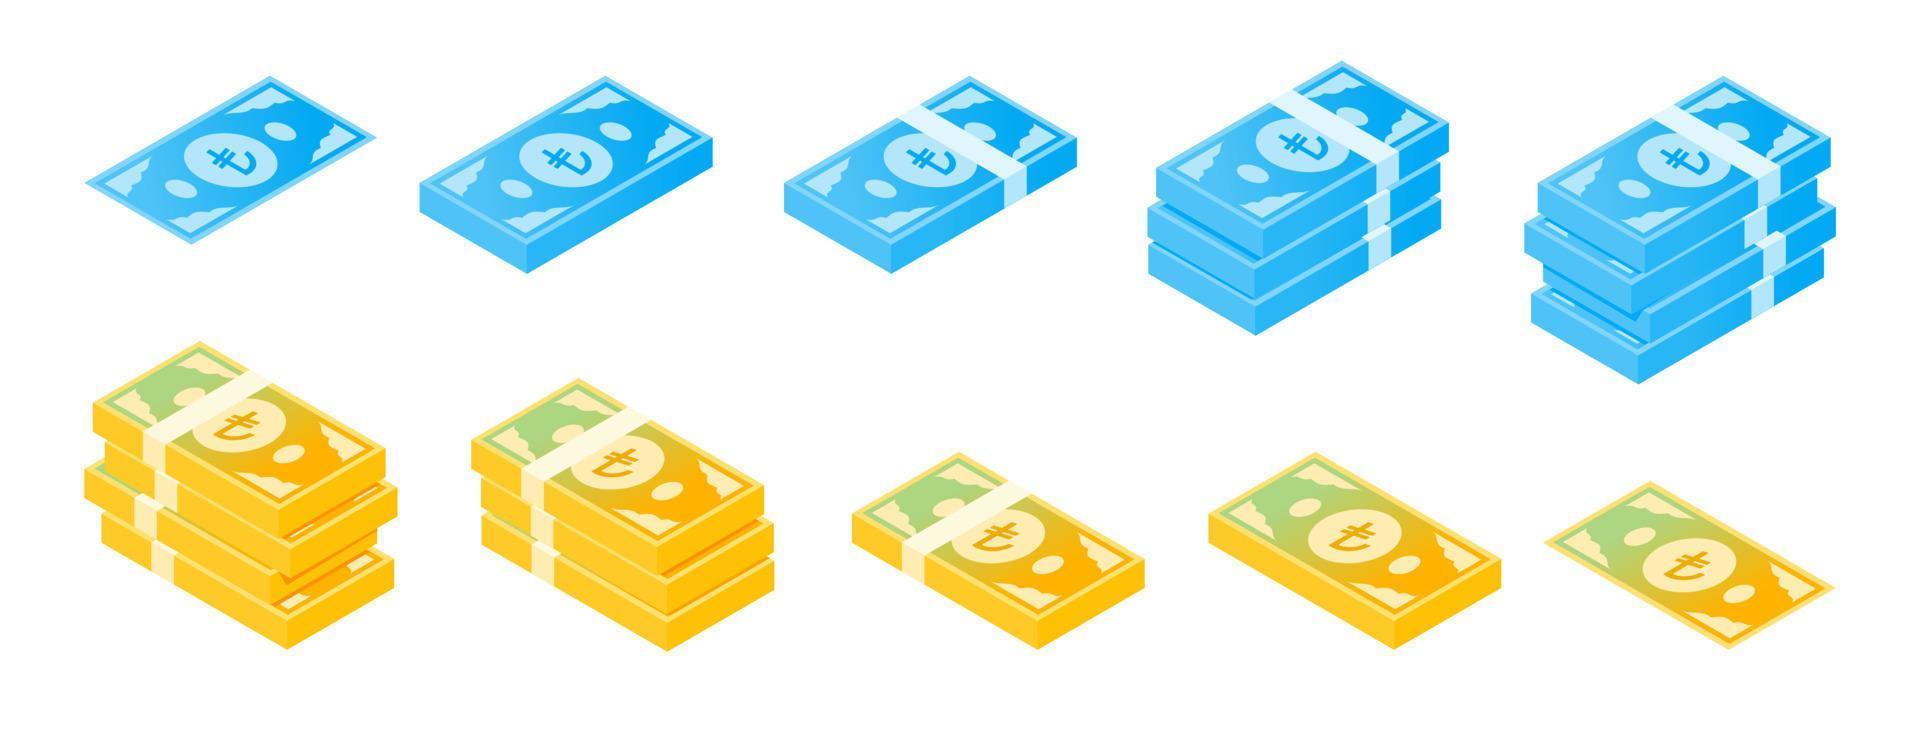 jeu d'icônes isométrique de billets de banque en lire turque vecteur